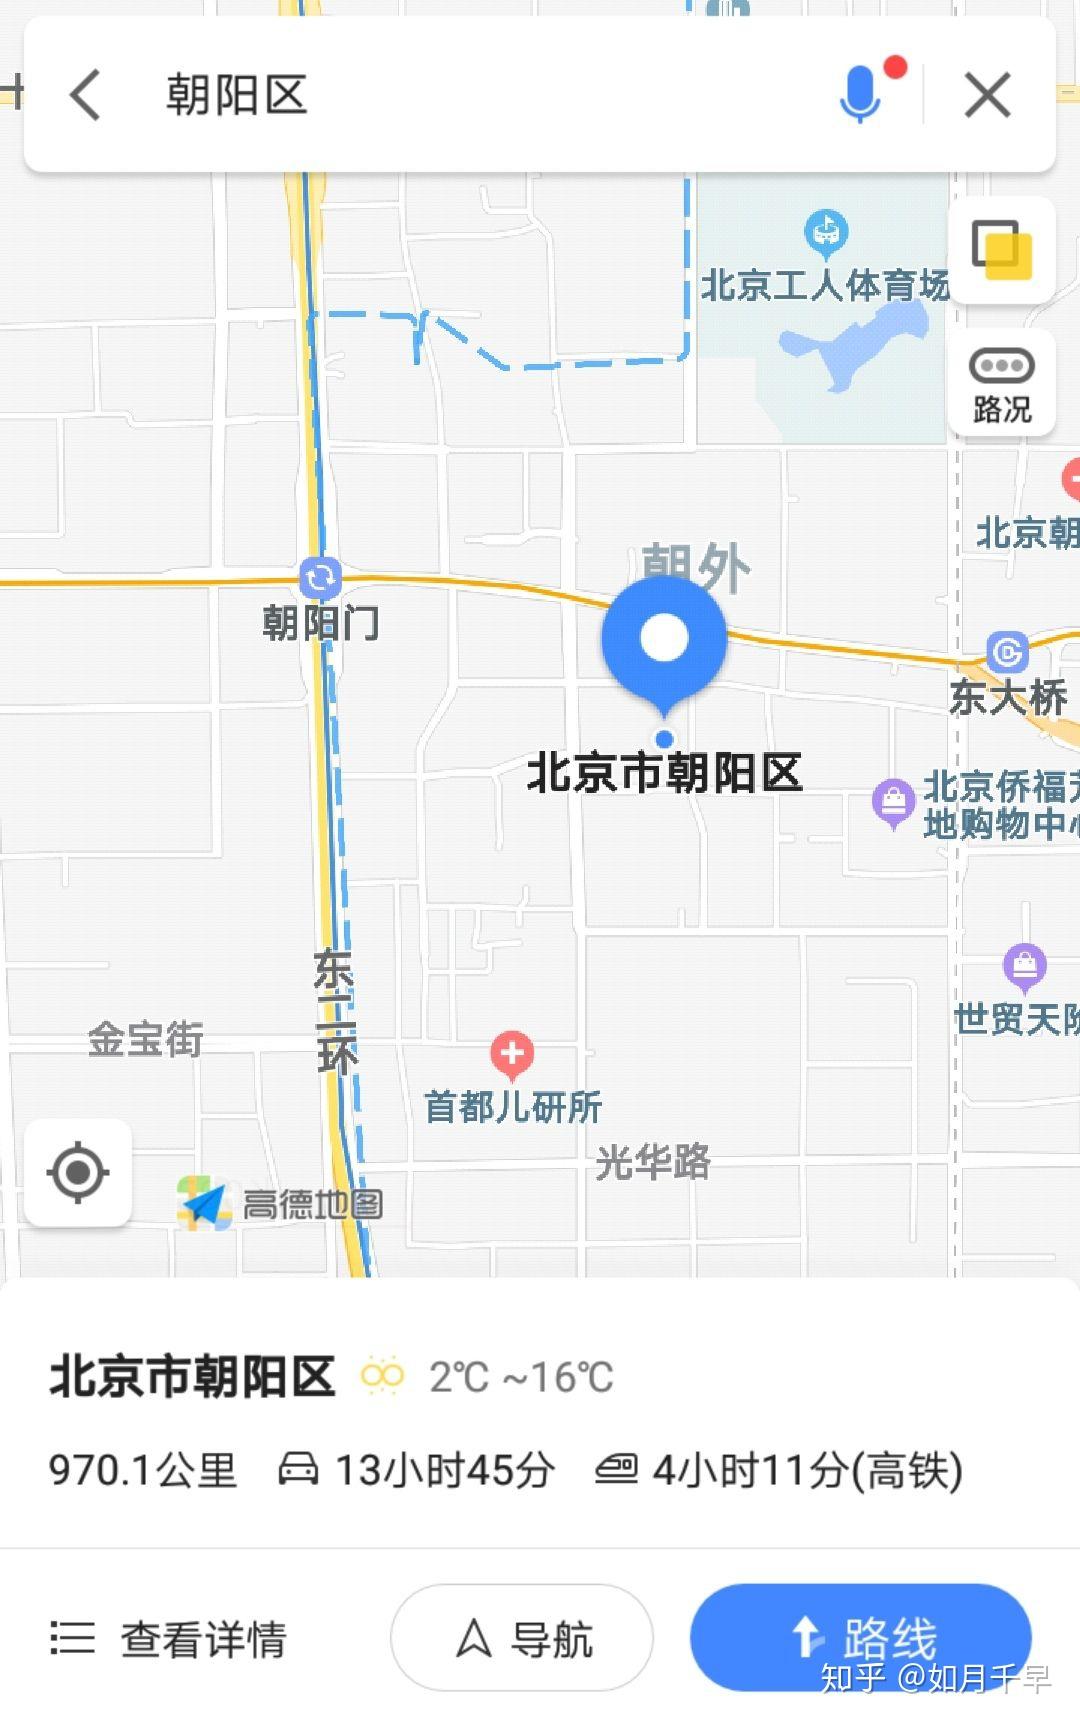 朝阳区在北京市是一种什么样的存在？ - 知乎